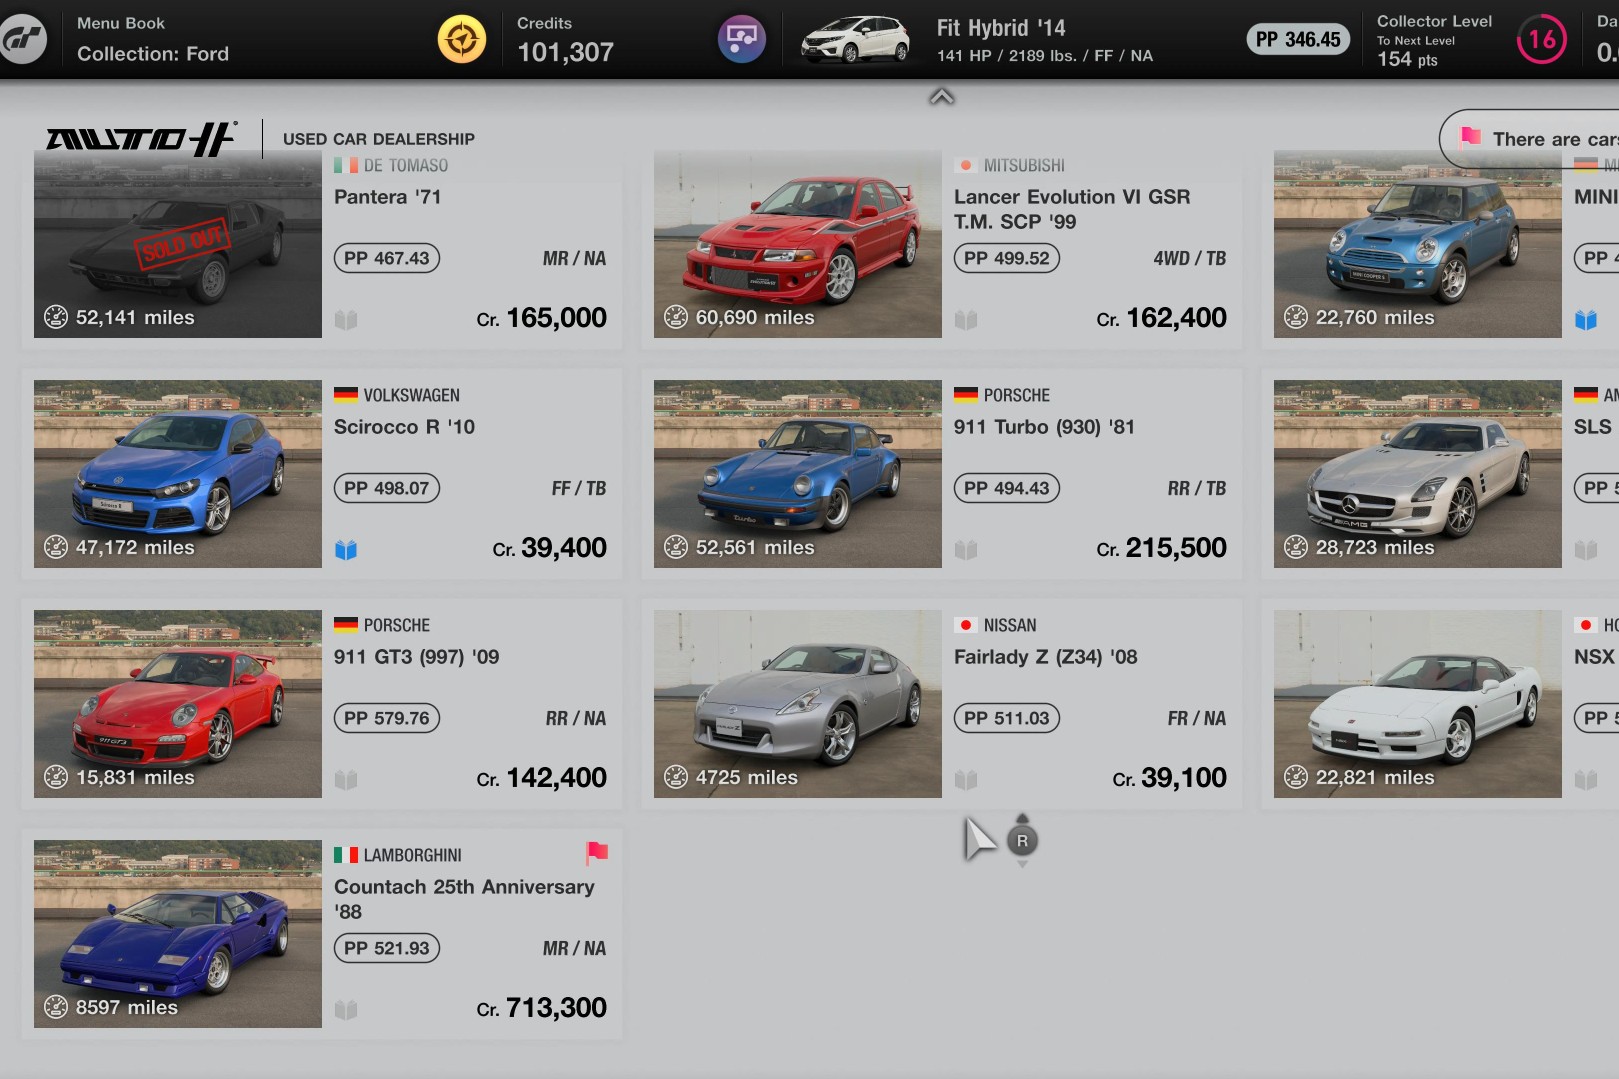 Gran Turismo 7 car list: All 400+ cars in Gran Turismo 7